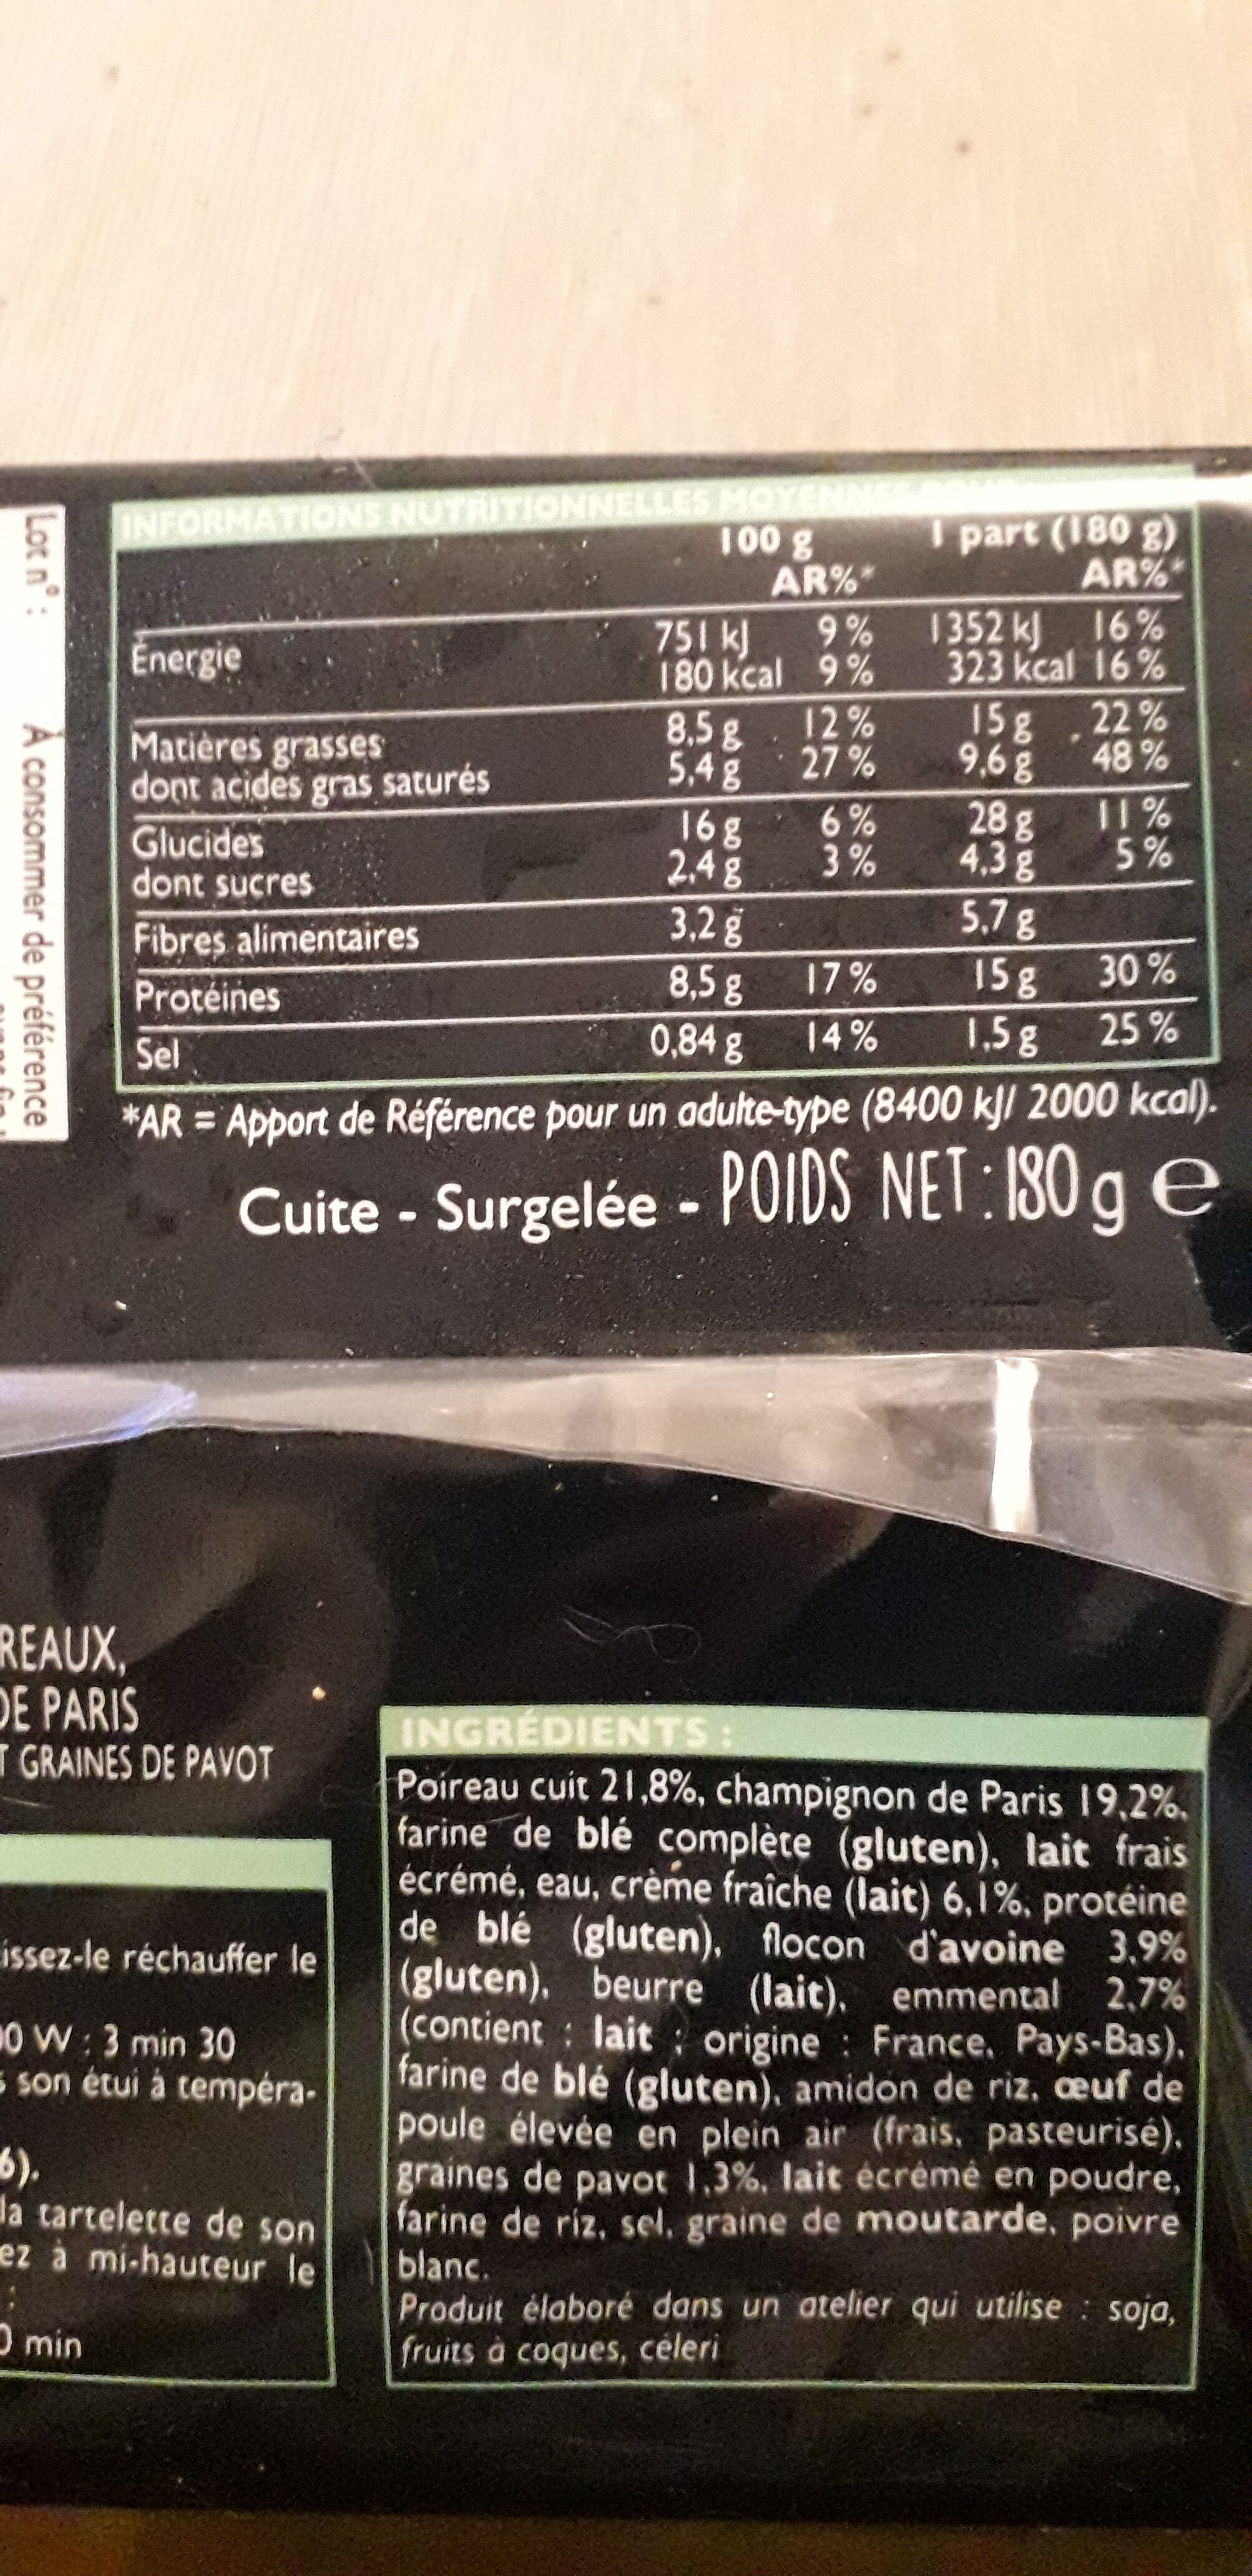 tartelette poireaux champignon de paris - Nutrition facts - fr